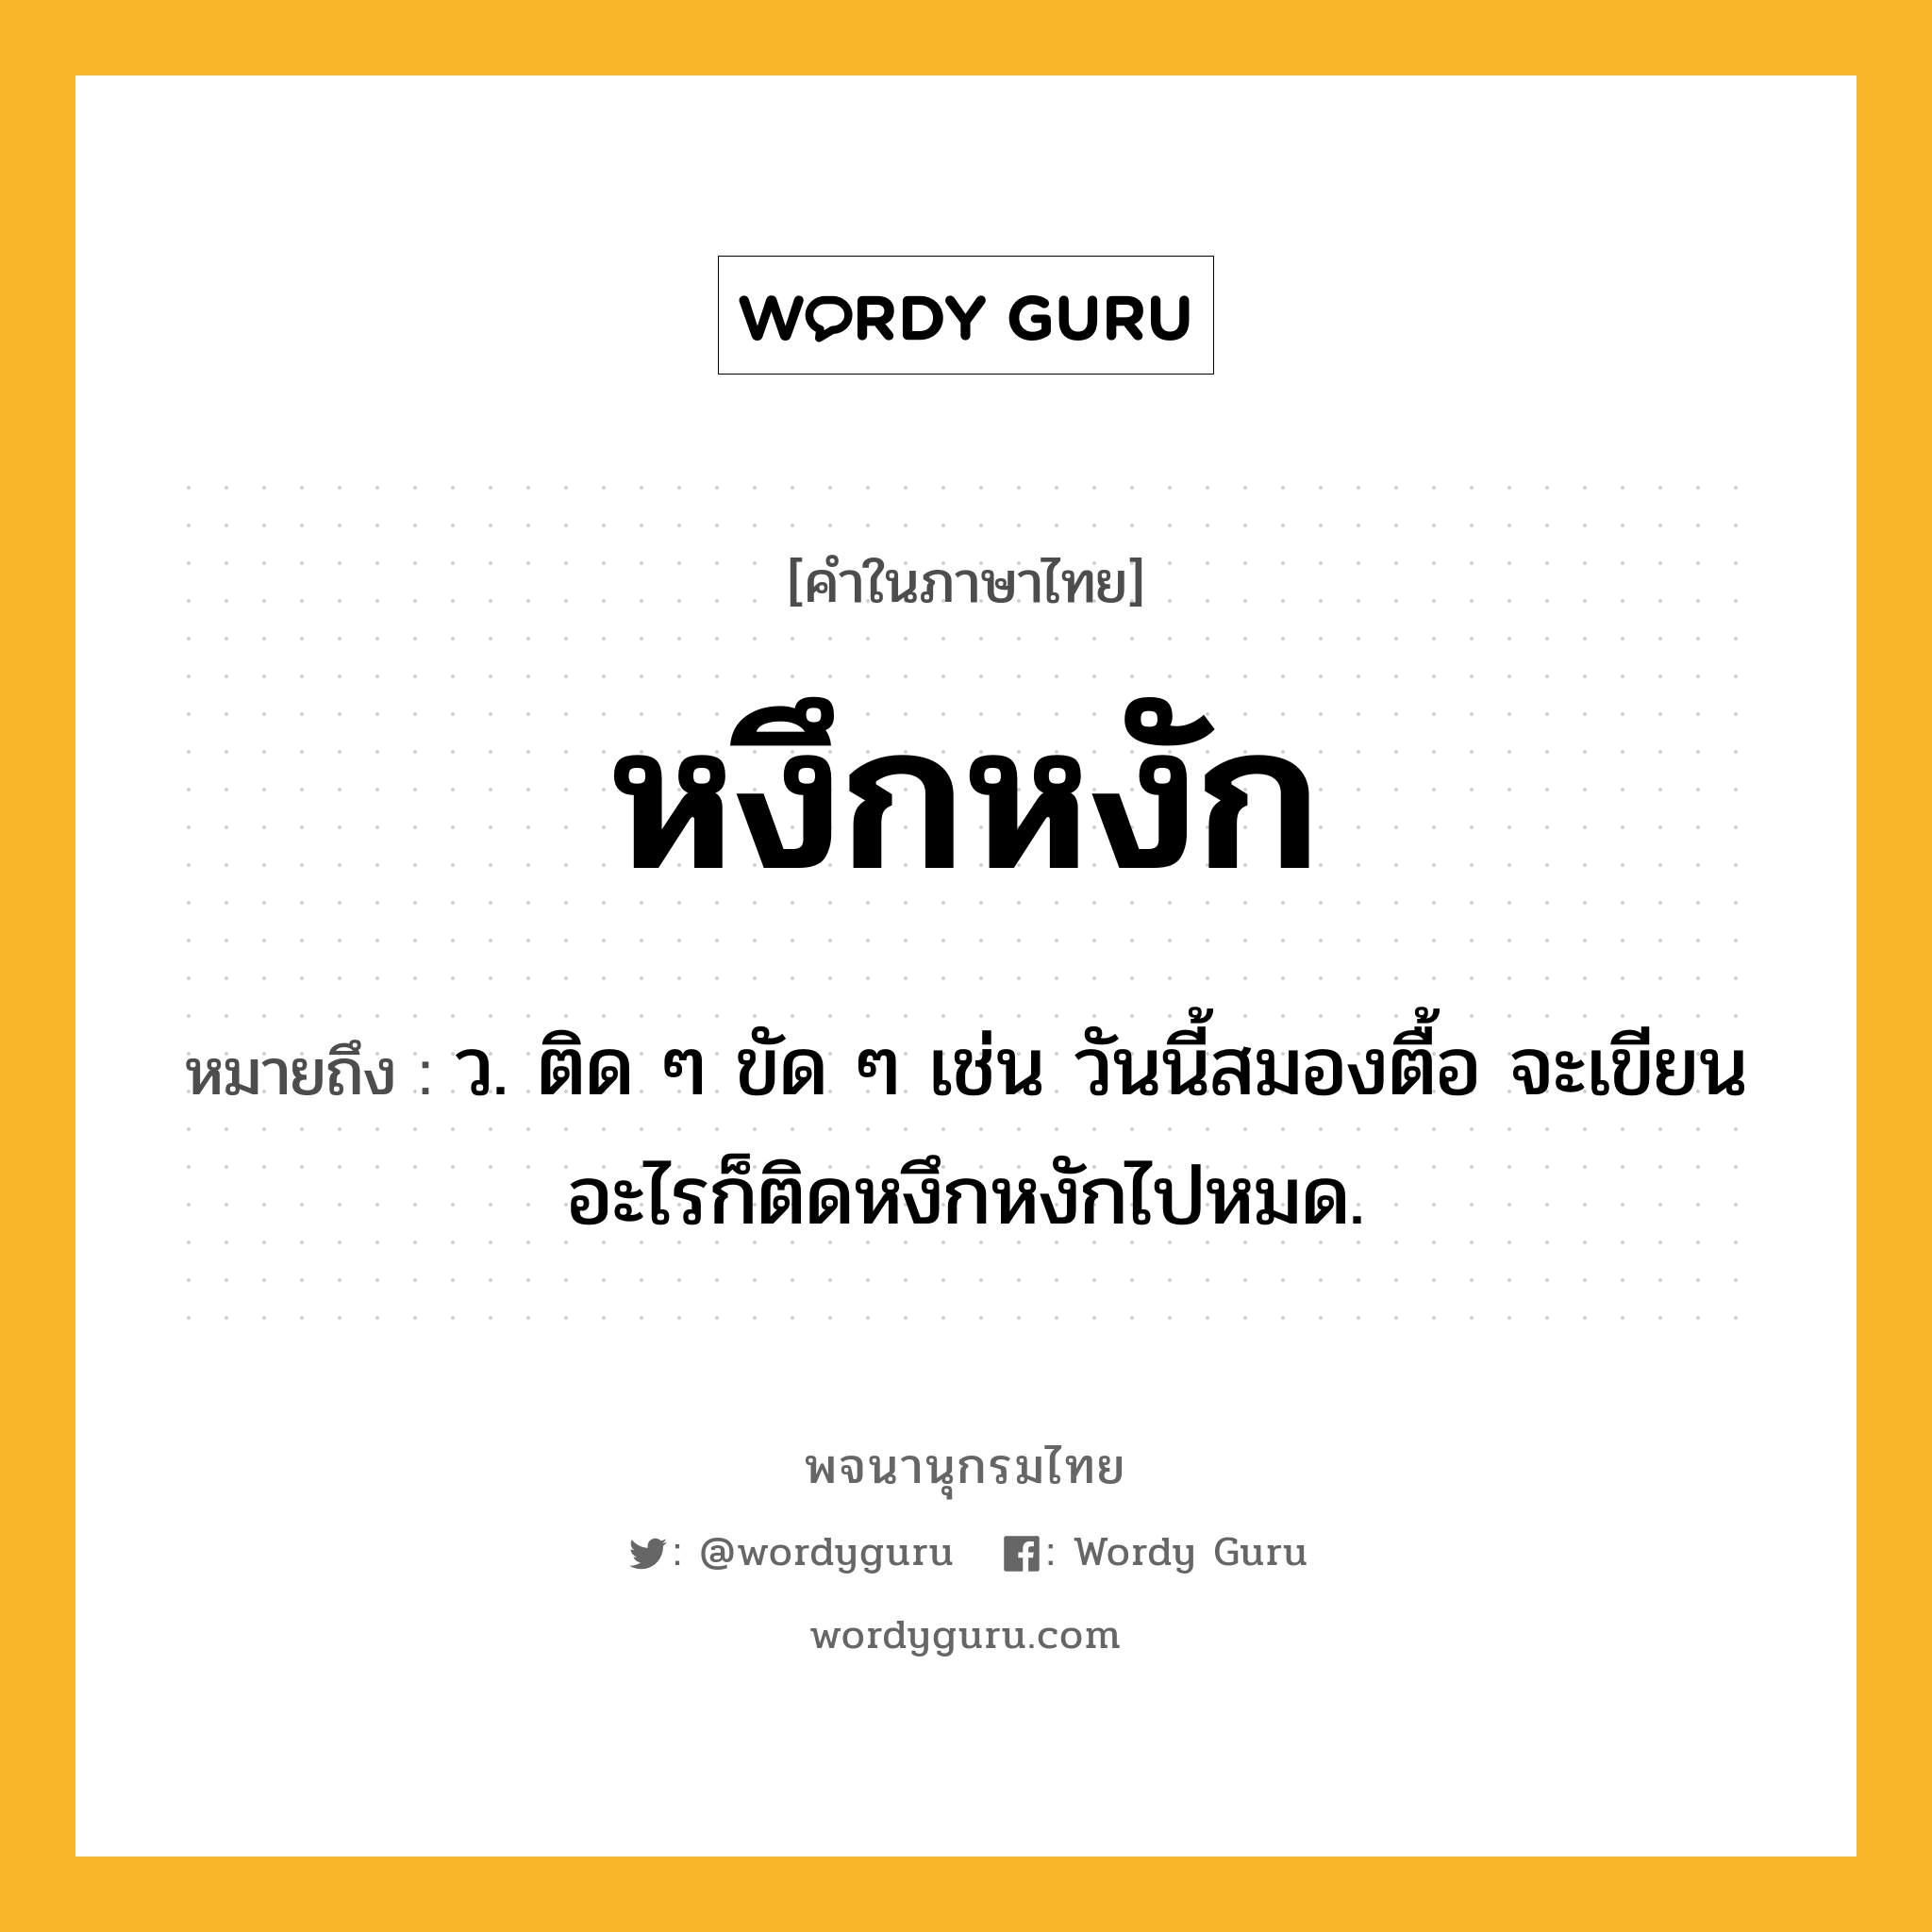 หงึกหงัก ความหมาย หมายถึงอะไร?, คำในภาษาไทย หงึกหงัก หมายถึง ว. ติด ๆ ขัด ๆ เช่น วันนี้สมองตื้อ จะเขียนอะไรก็ติดหงึกหงักไปหมด.